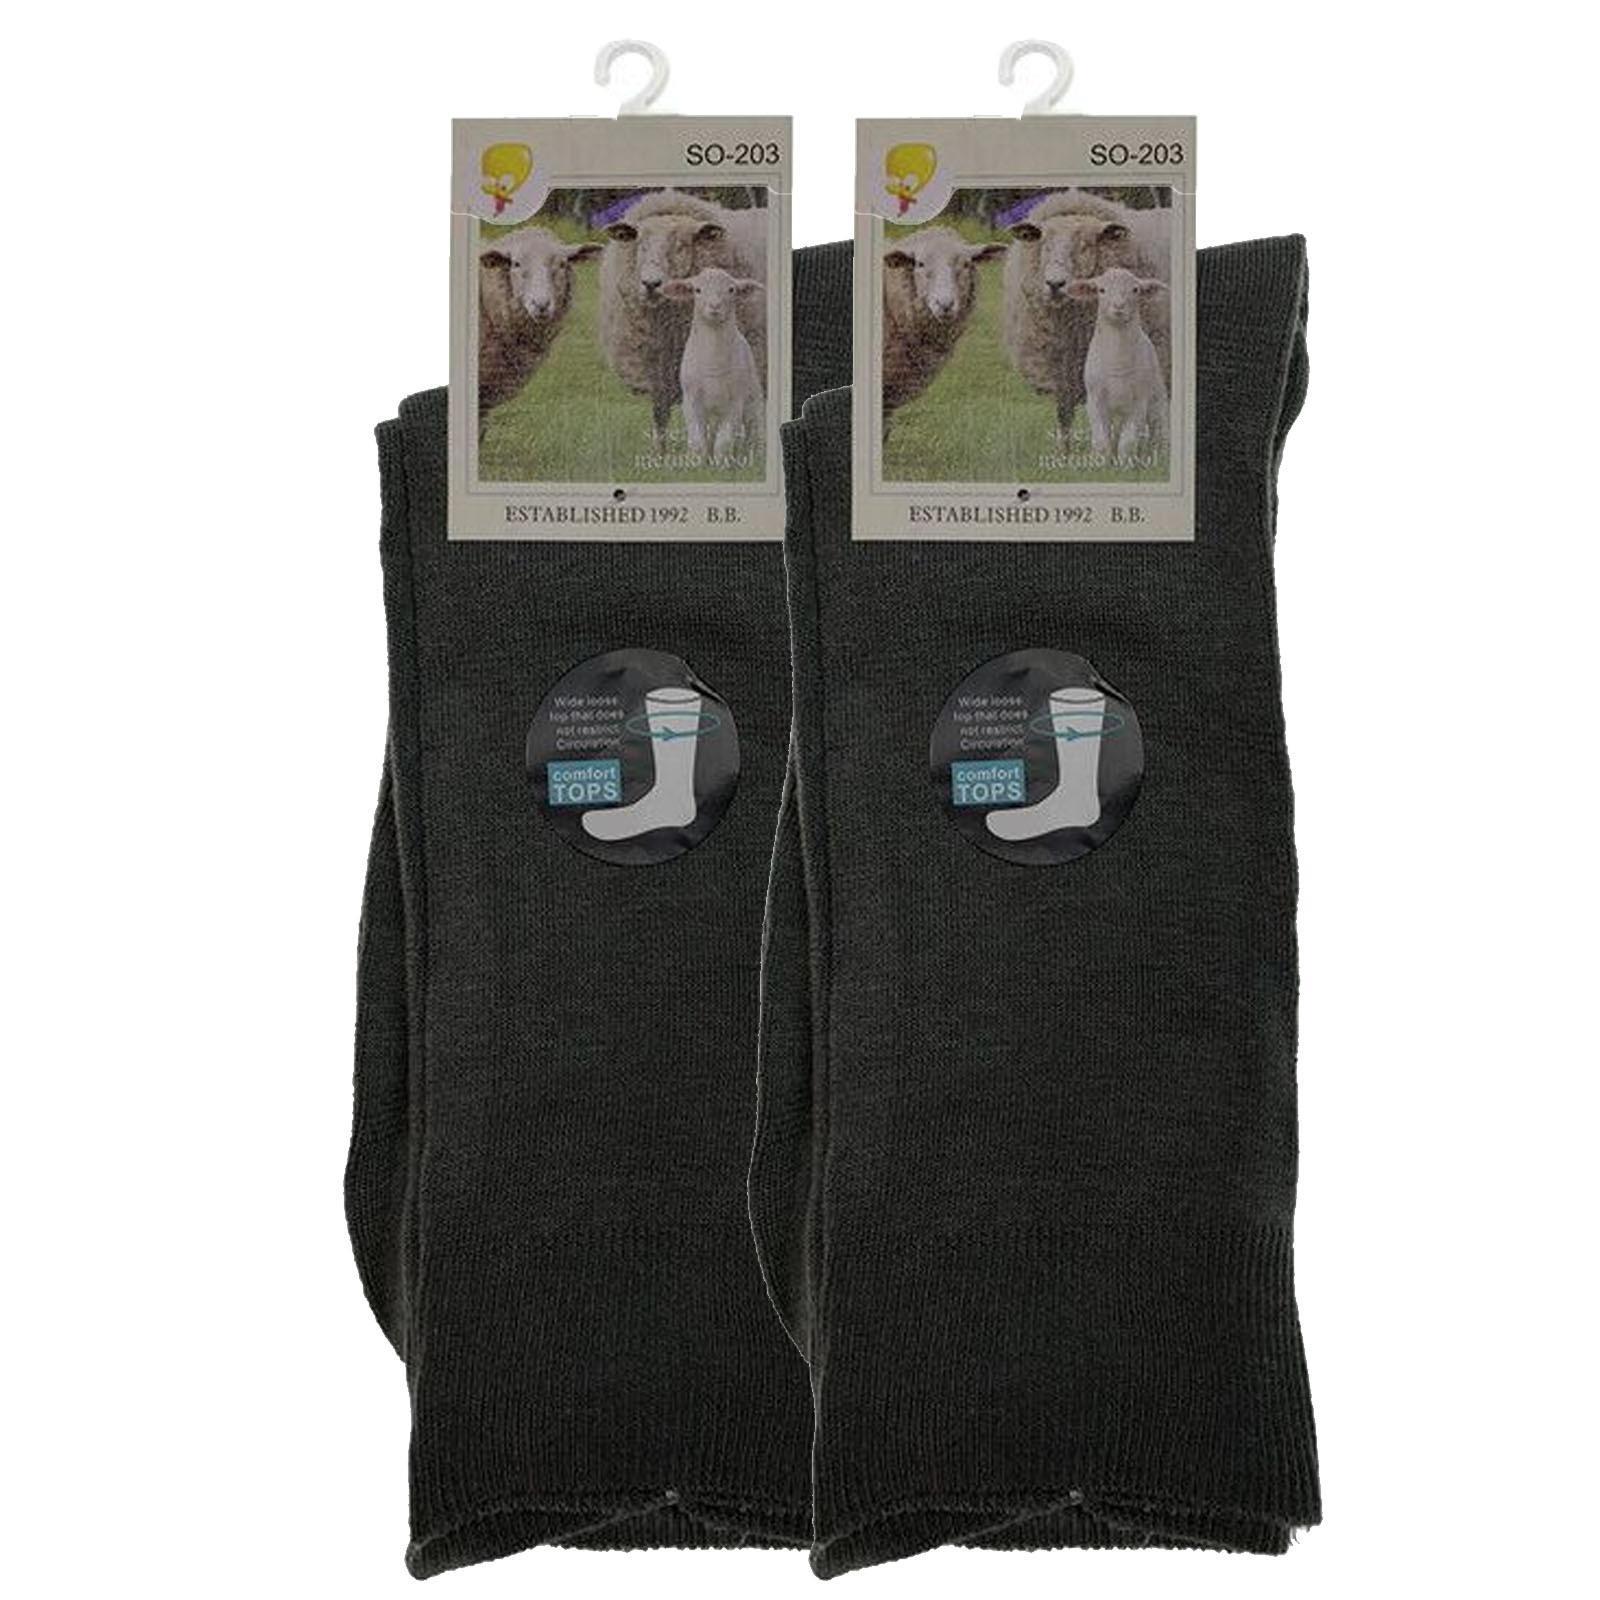 Merino Wool Mens Loose Top Thermal Socks Diabetic Comfort Circulation - 2 Pairs - Grey - 2-8